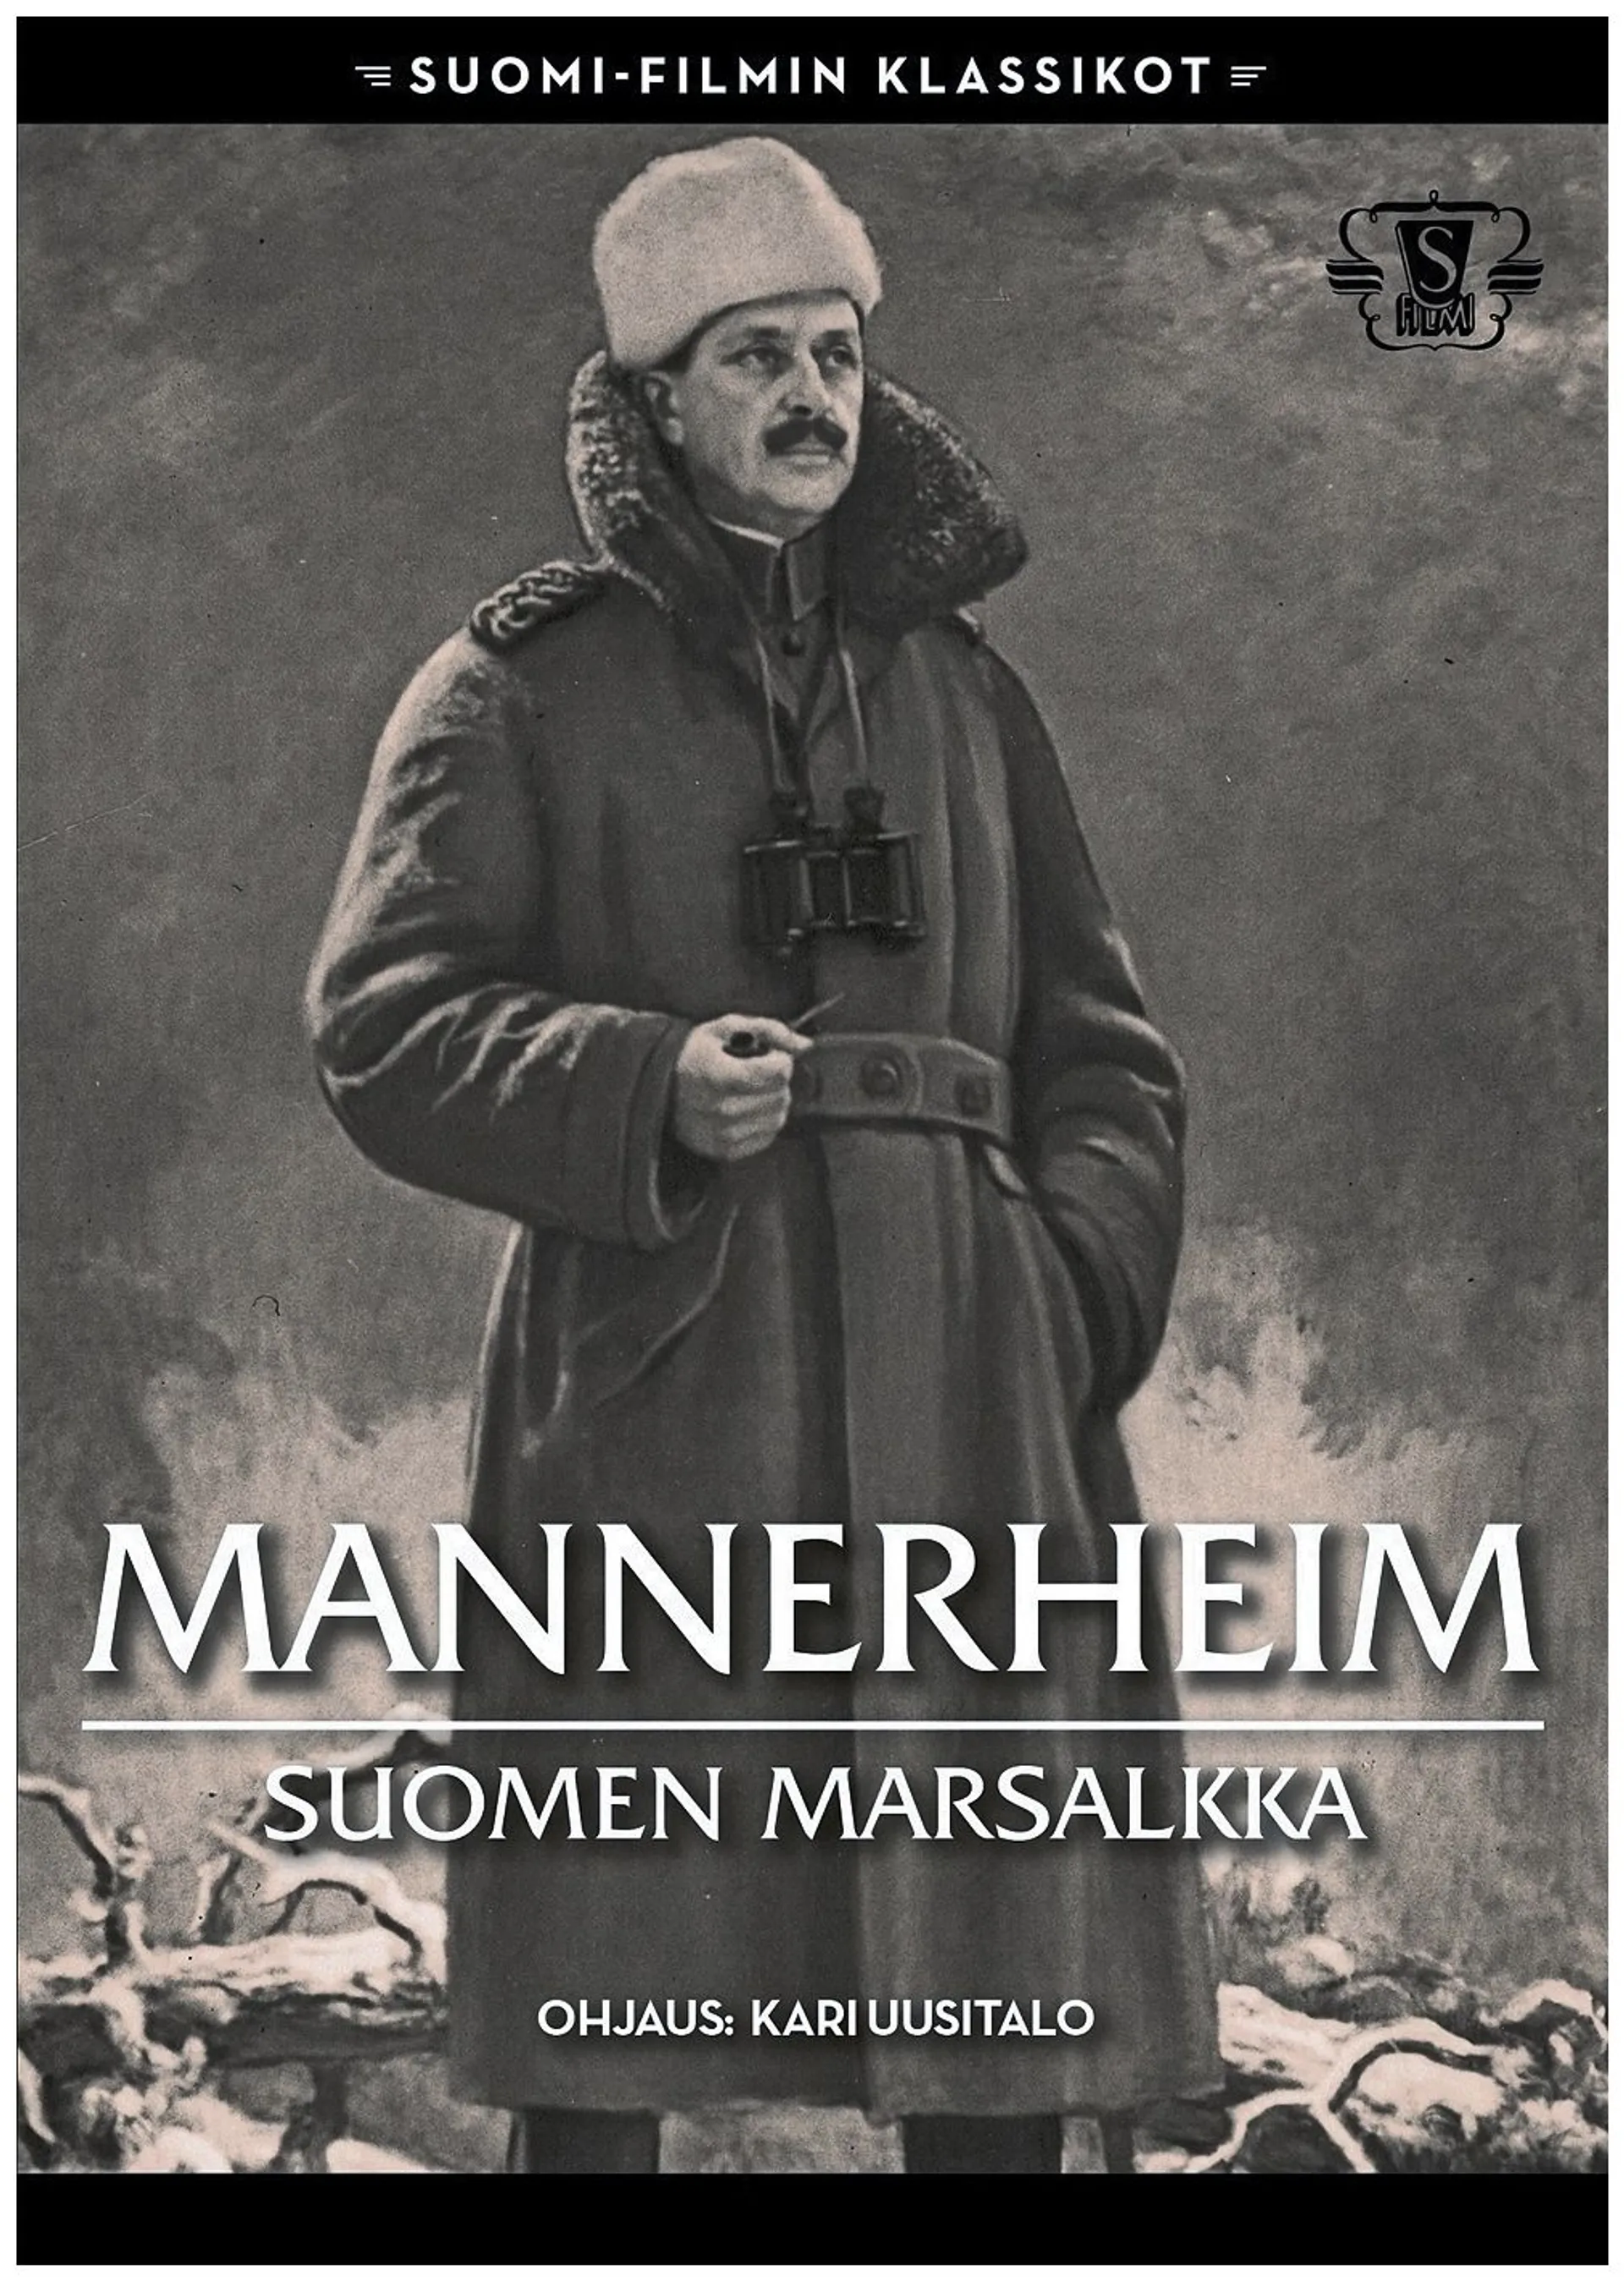 Mannerhein Suomen Marsalkka DVD